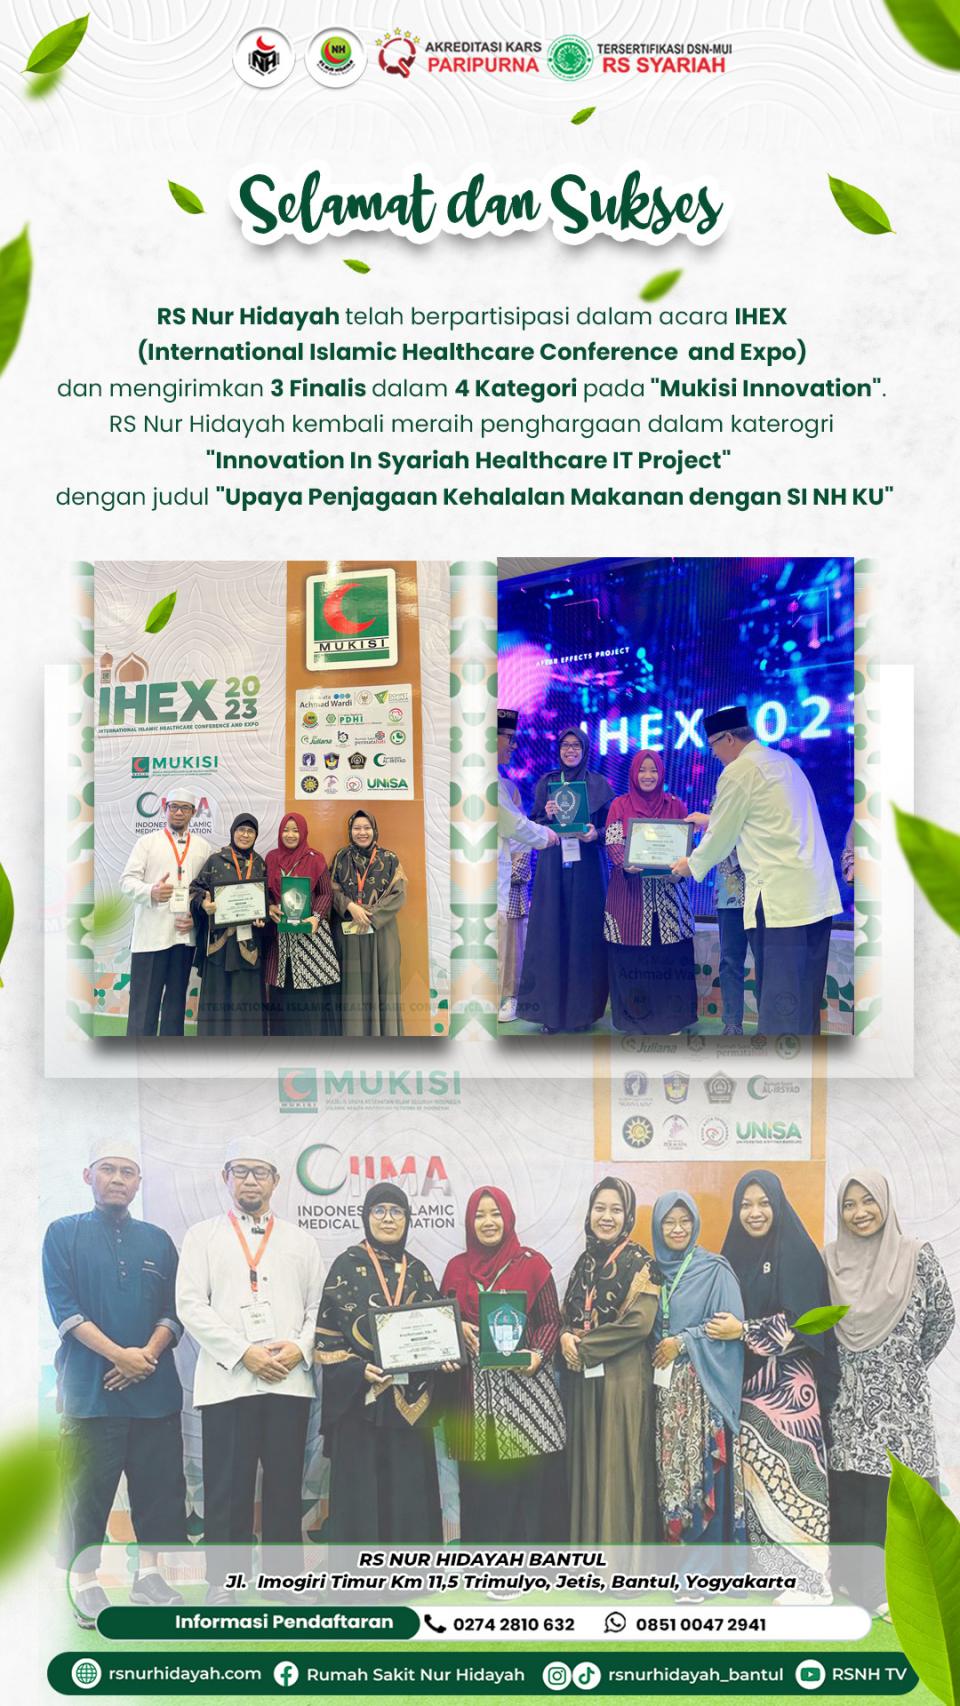 UCAPAN MUKISI JPG : RS Nur Hidayah Meraih Penghargaan Dalam Mukisi Innovation Dalam Acara IHEX